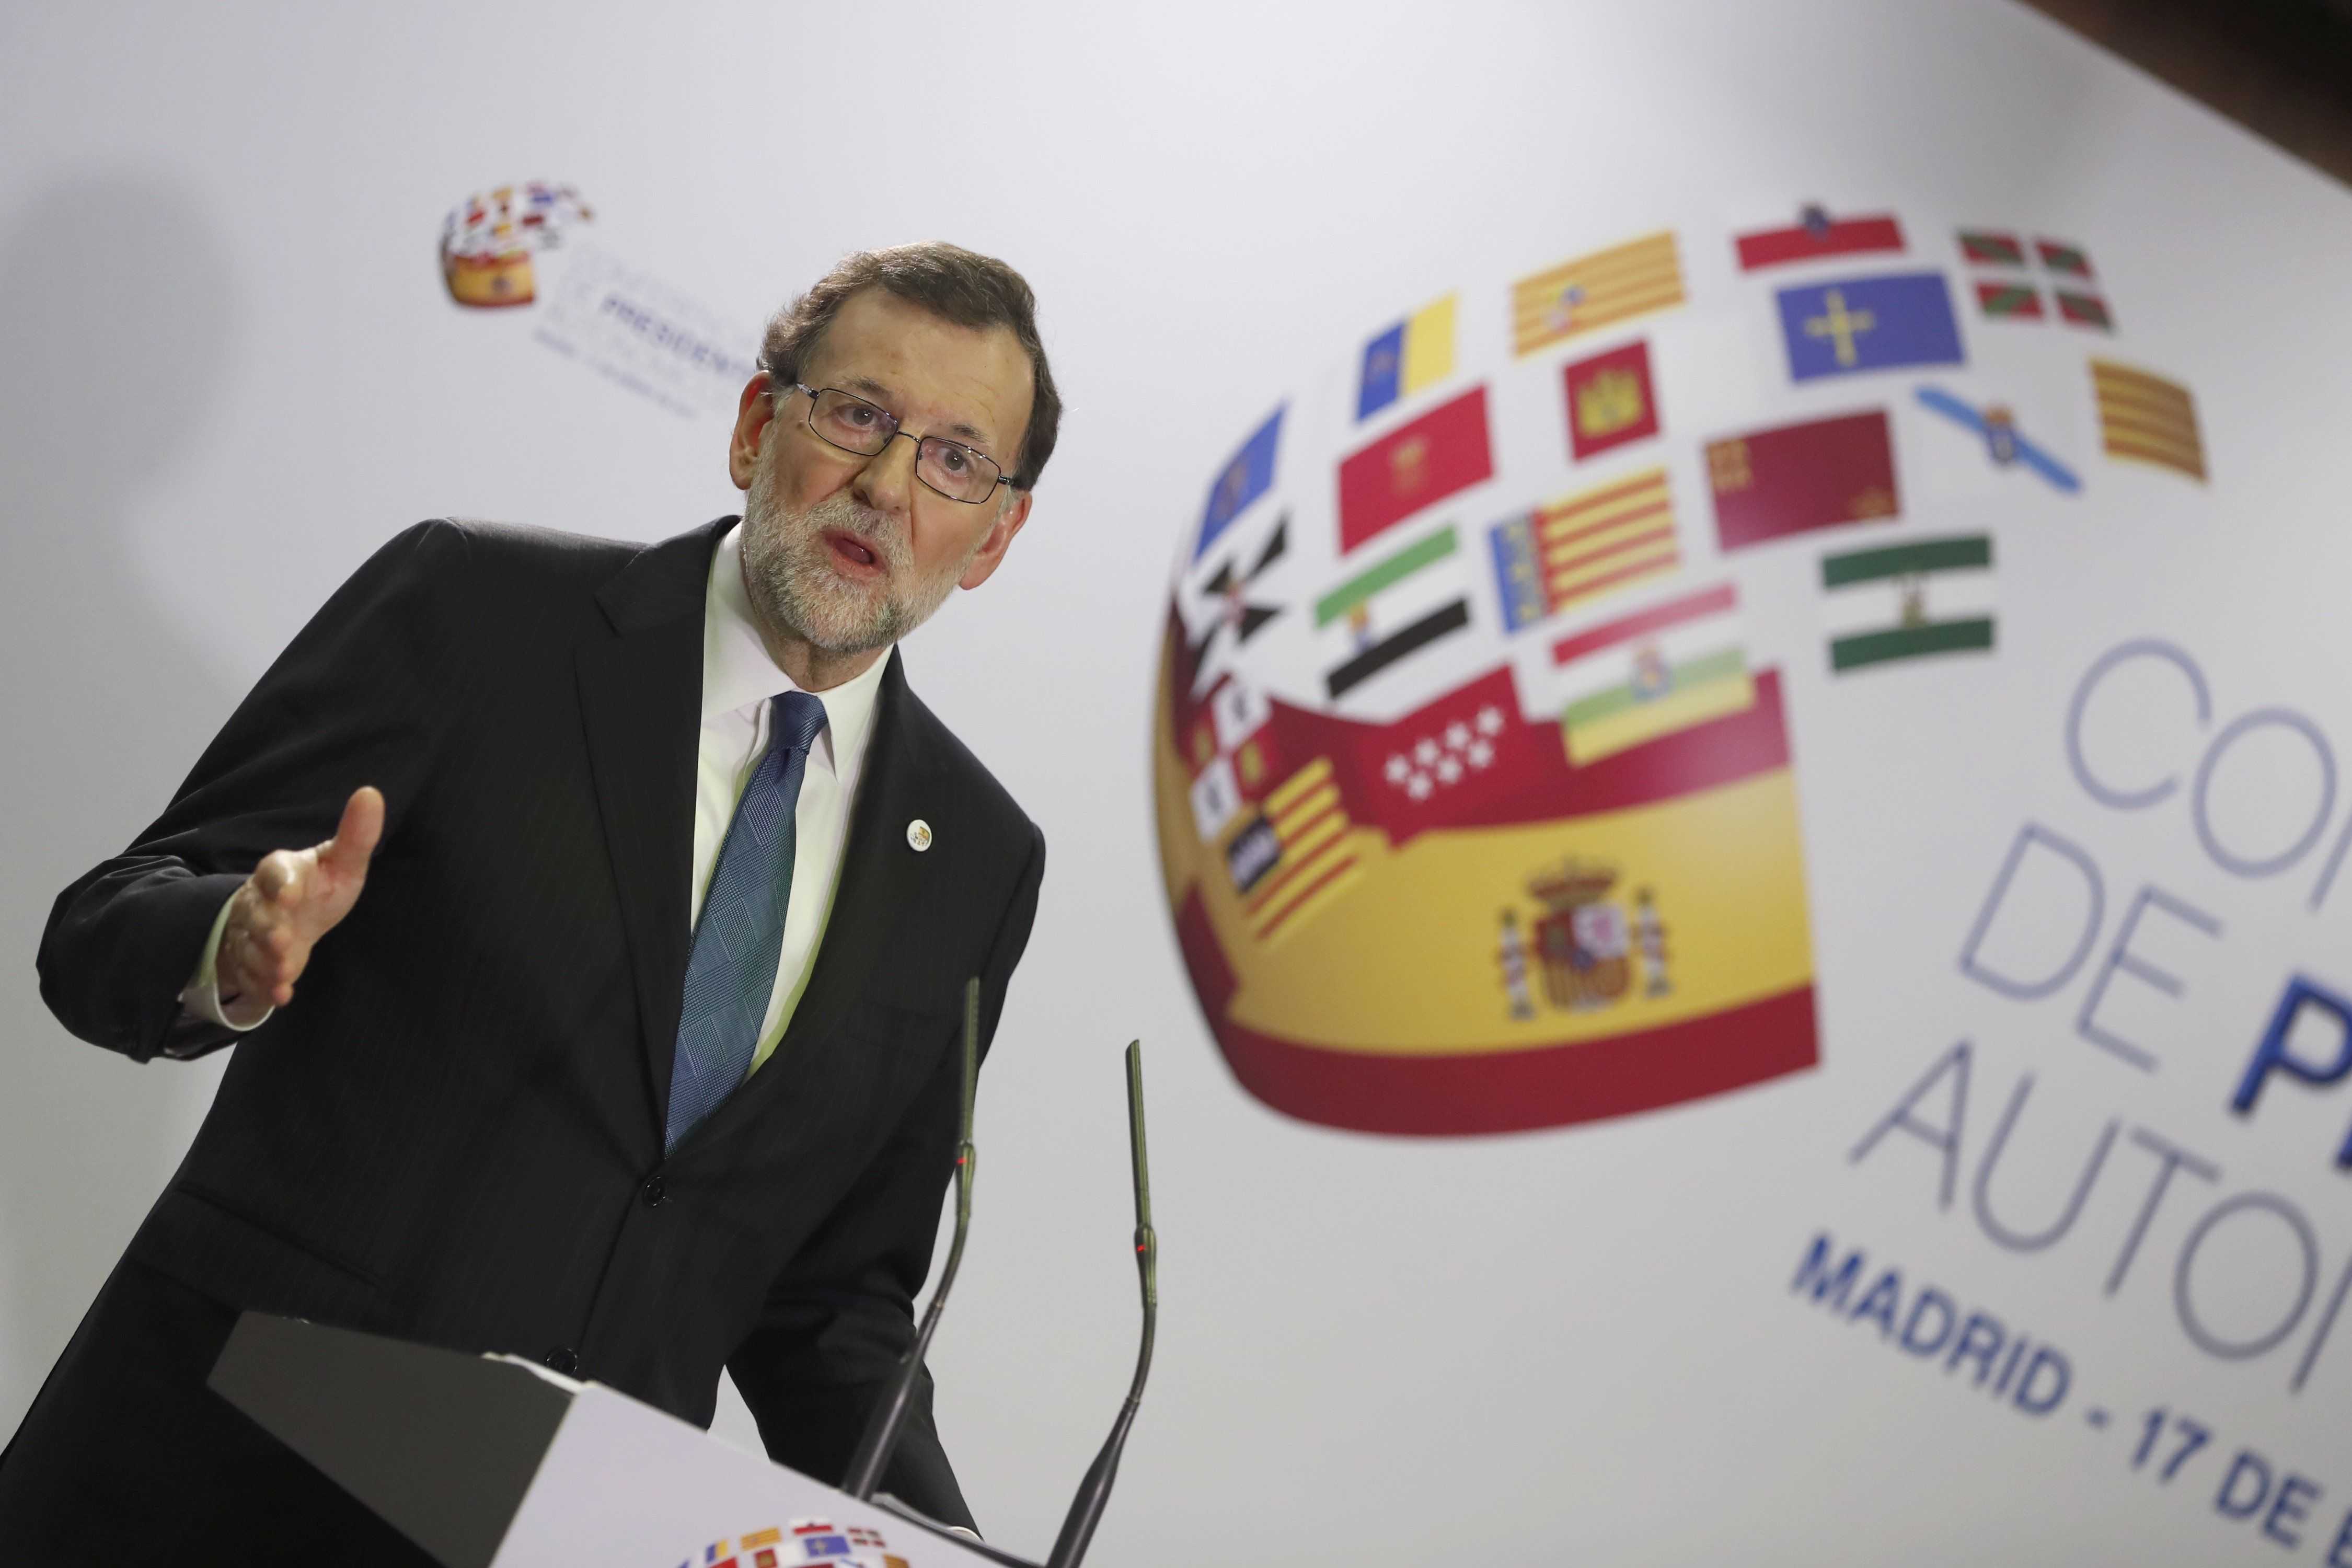 Rajoy: "Em reuniré amb Puigdemont sense cap problema"